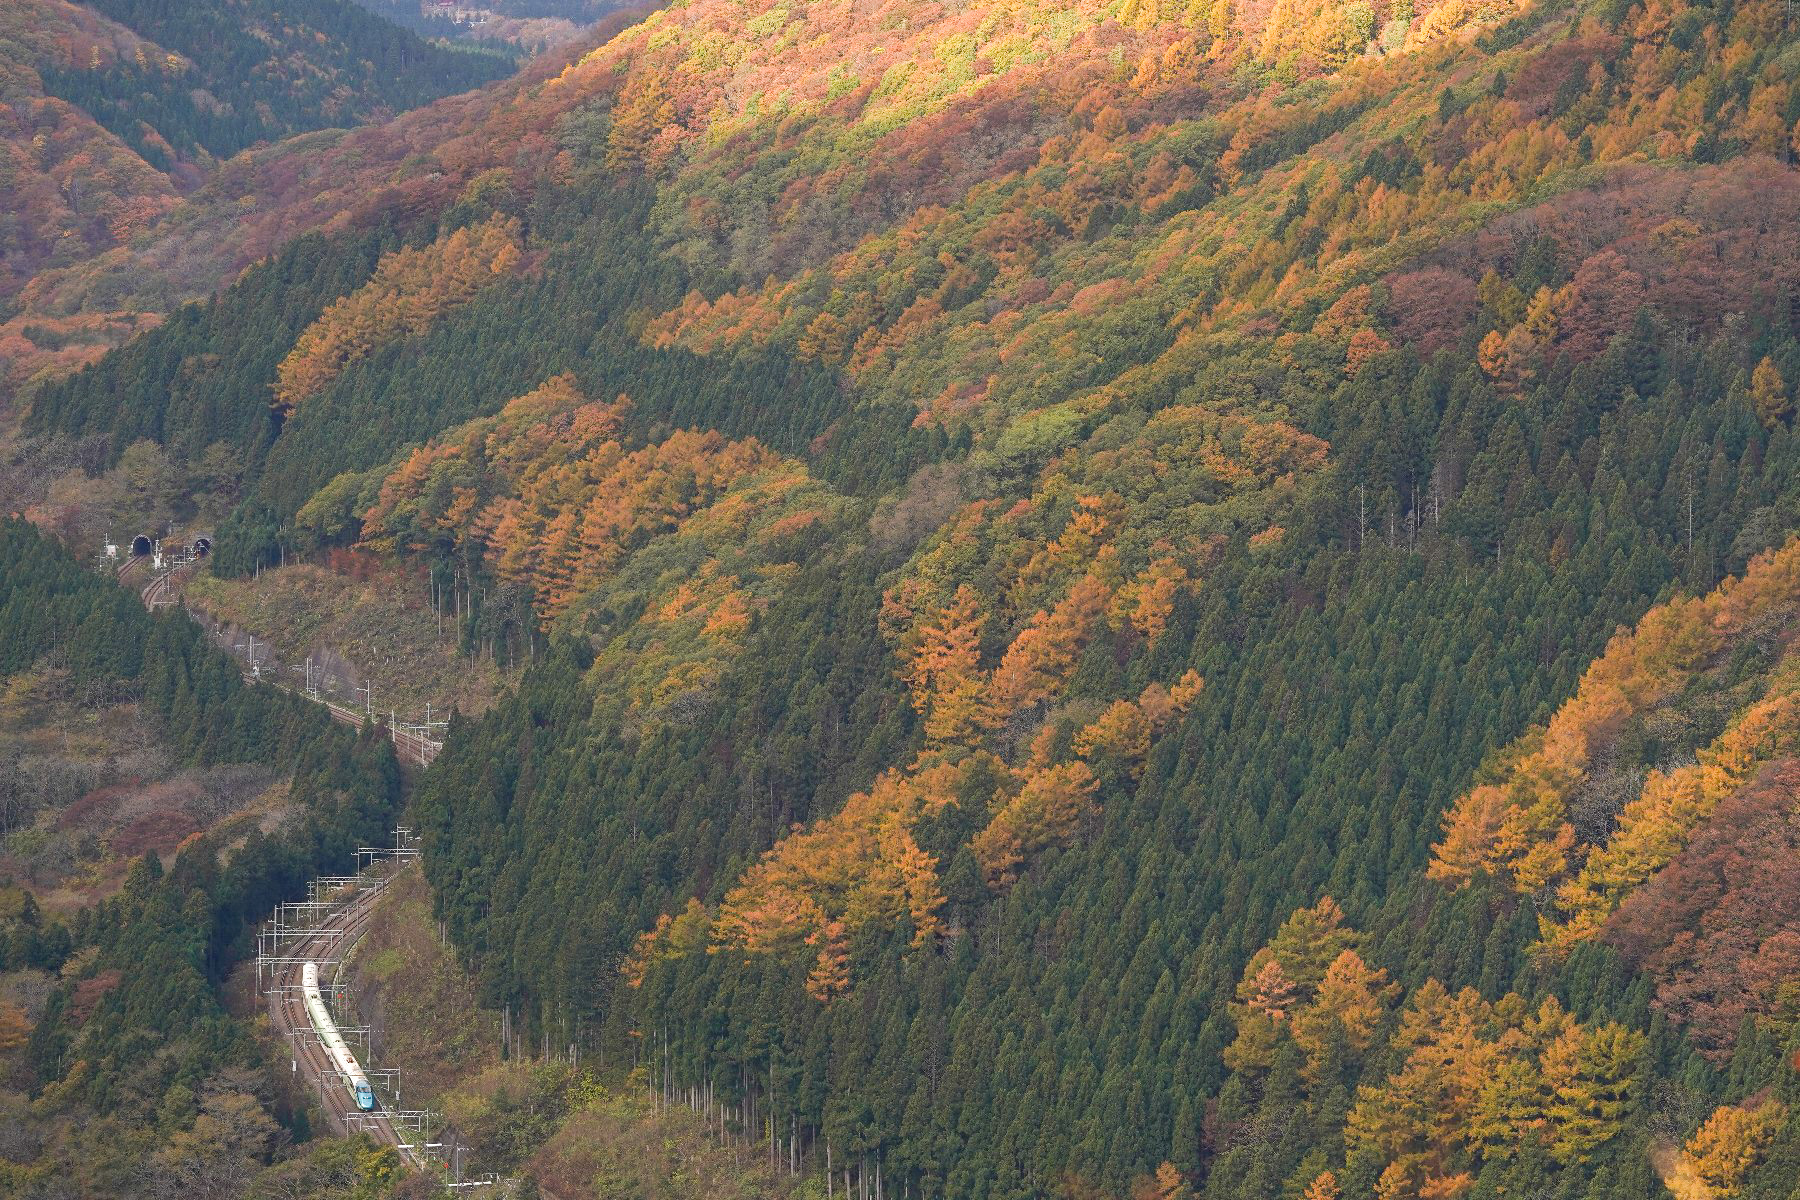 20191110_板谷峠を下る山形新幹線「とれいゆ つばさ」送り込み回送